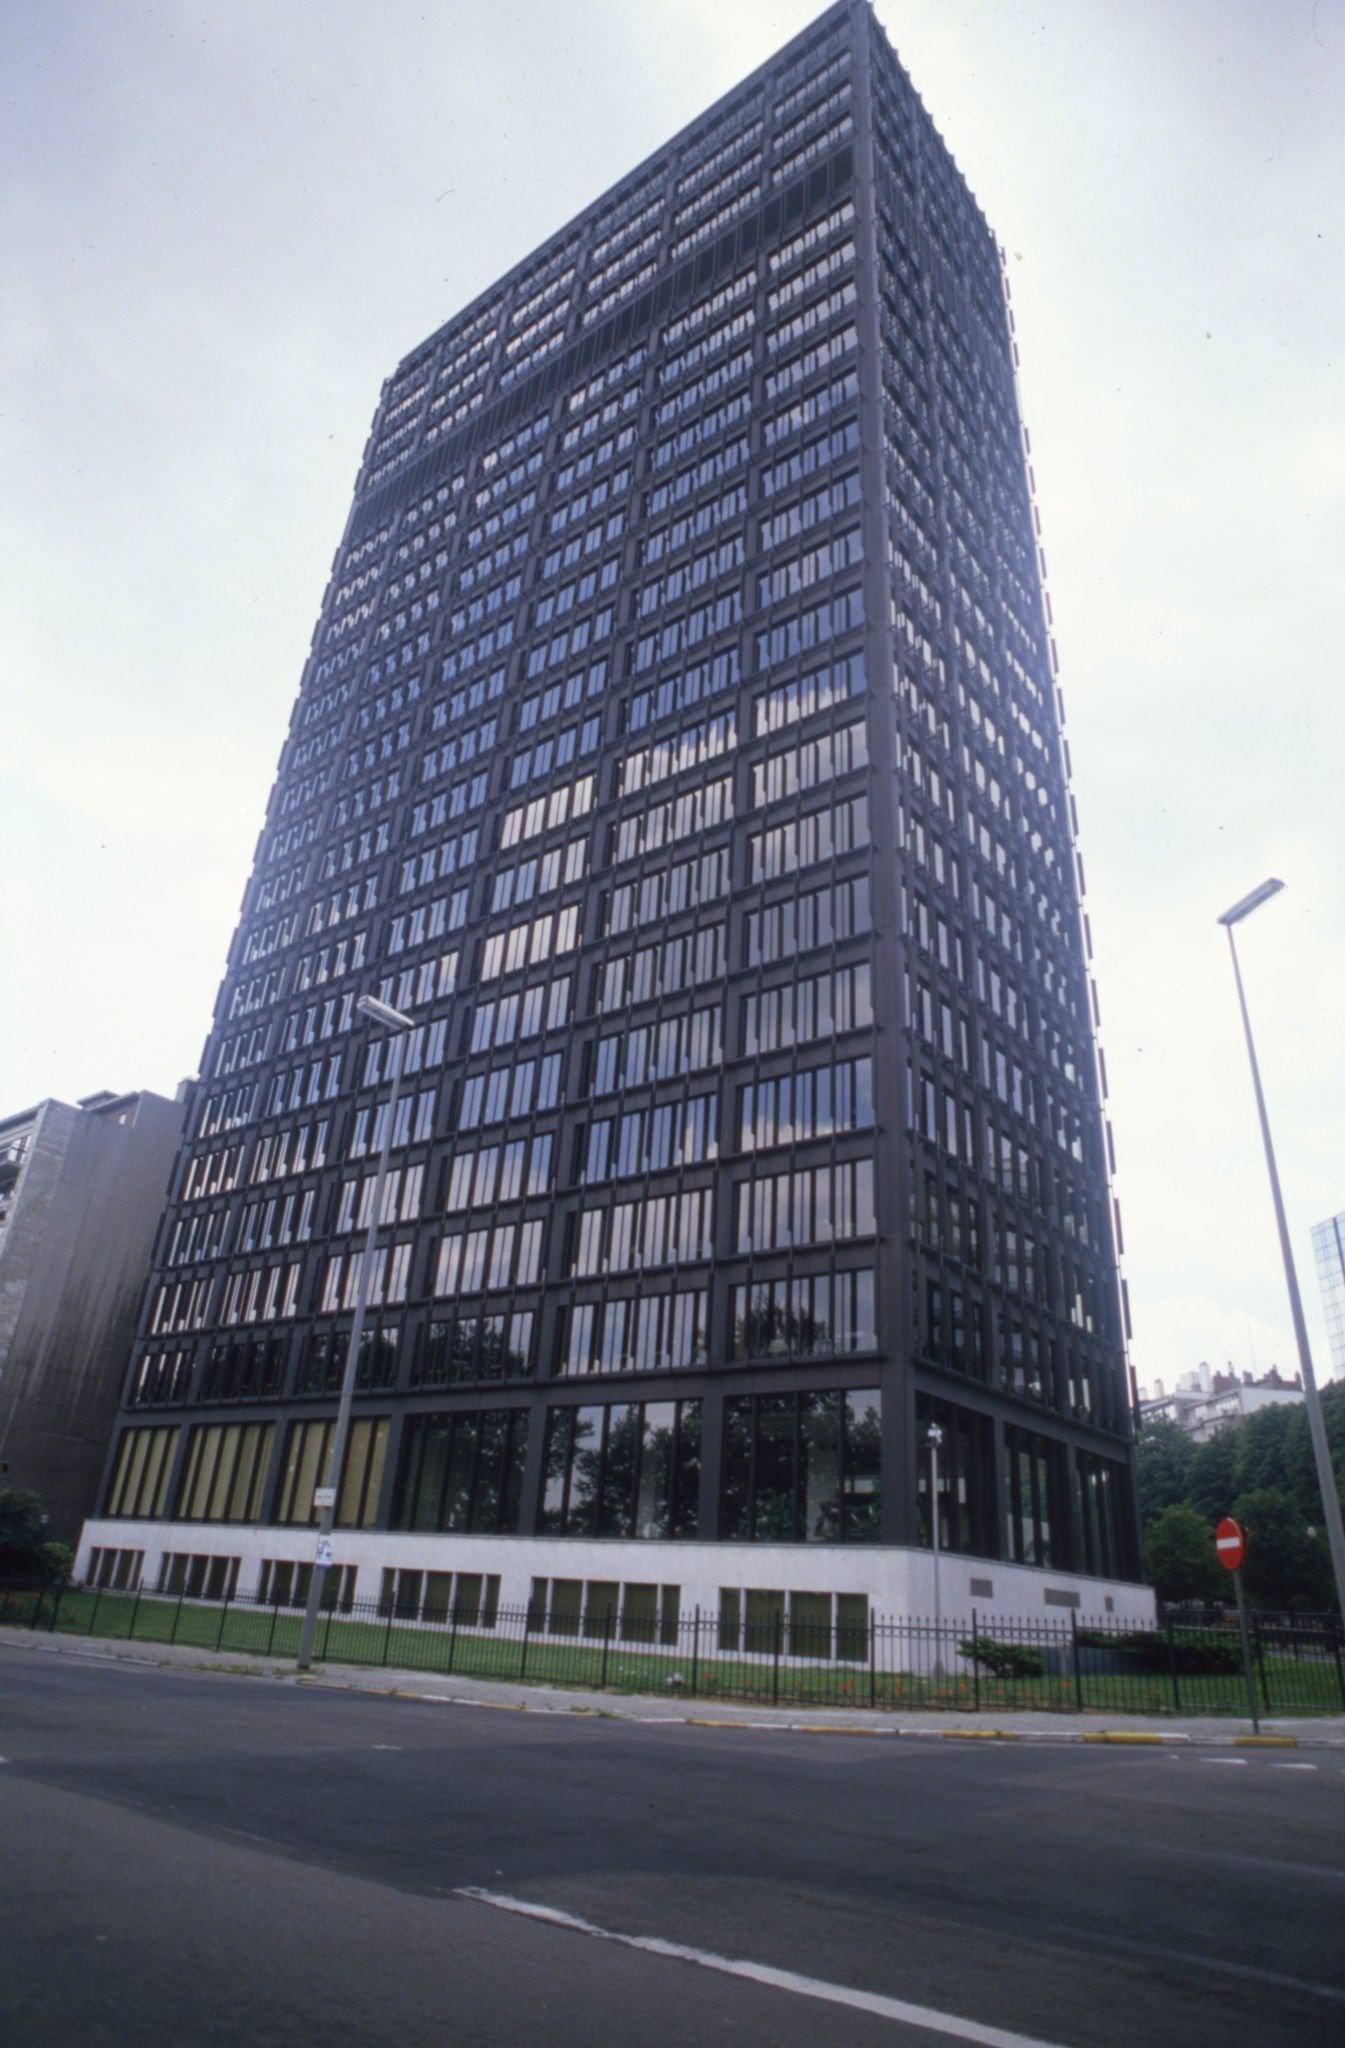 ITT European Headquarters in Brussels, Belgium, 1986.